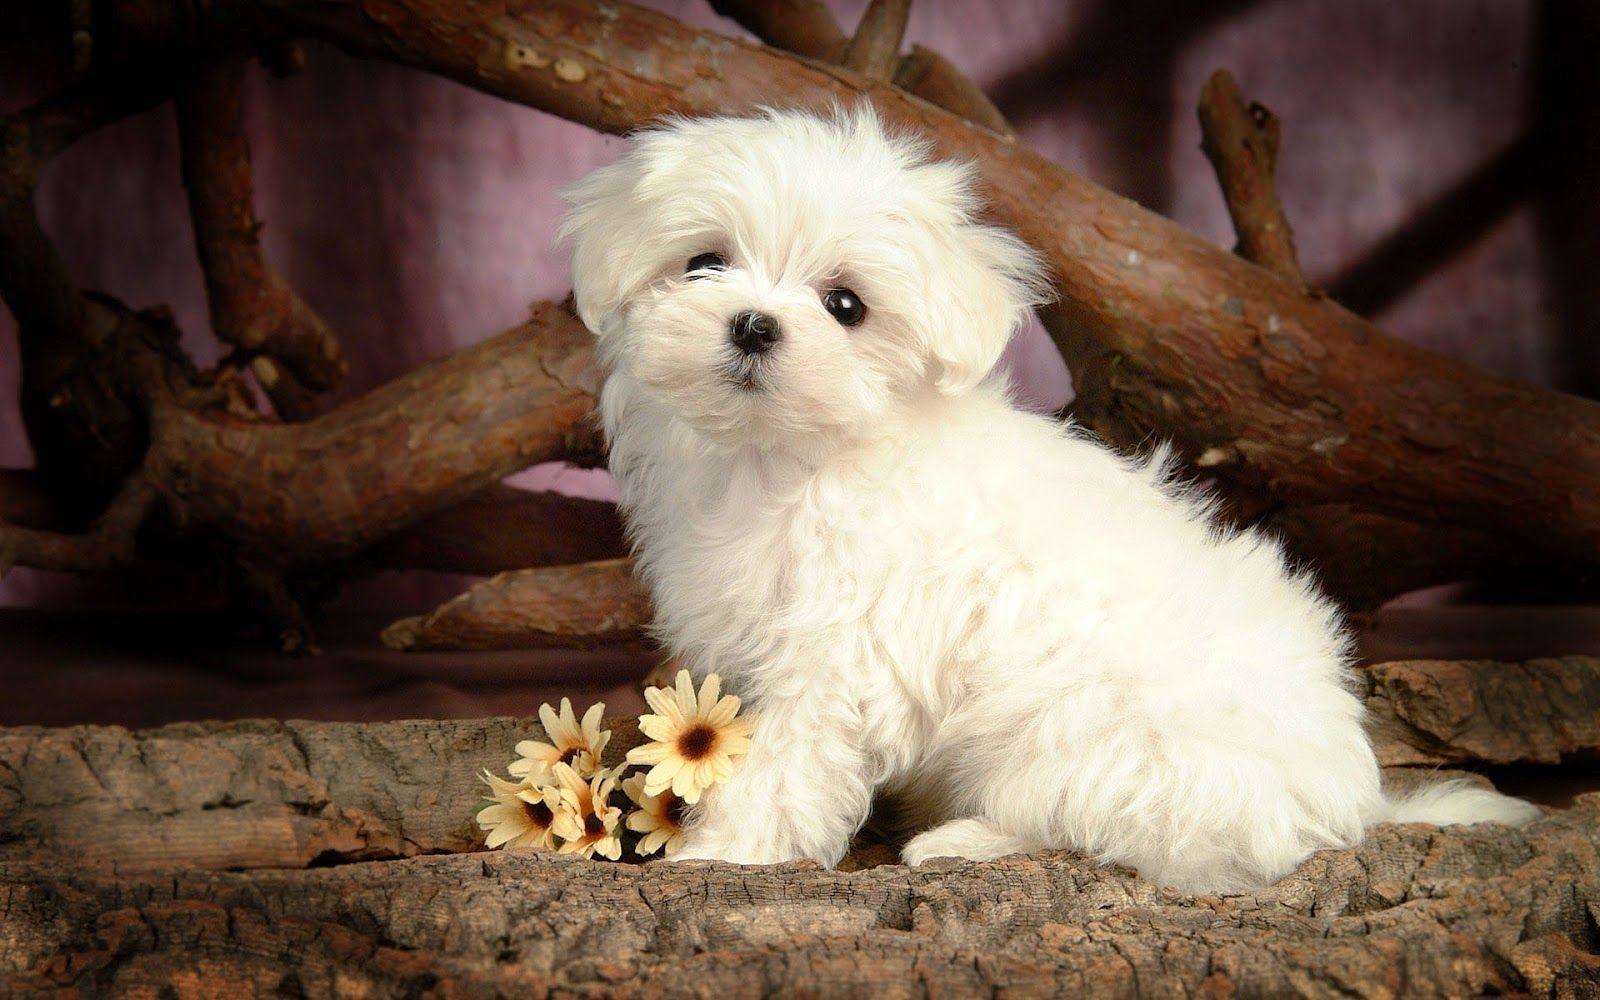 Fancy Puppy Dog HD Desktop Wallpaper 1600x1000PX Amazing Cute